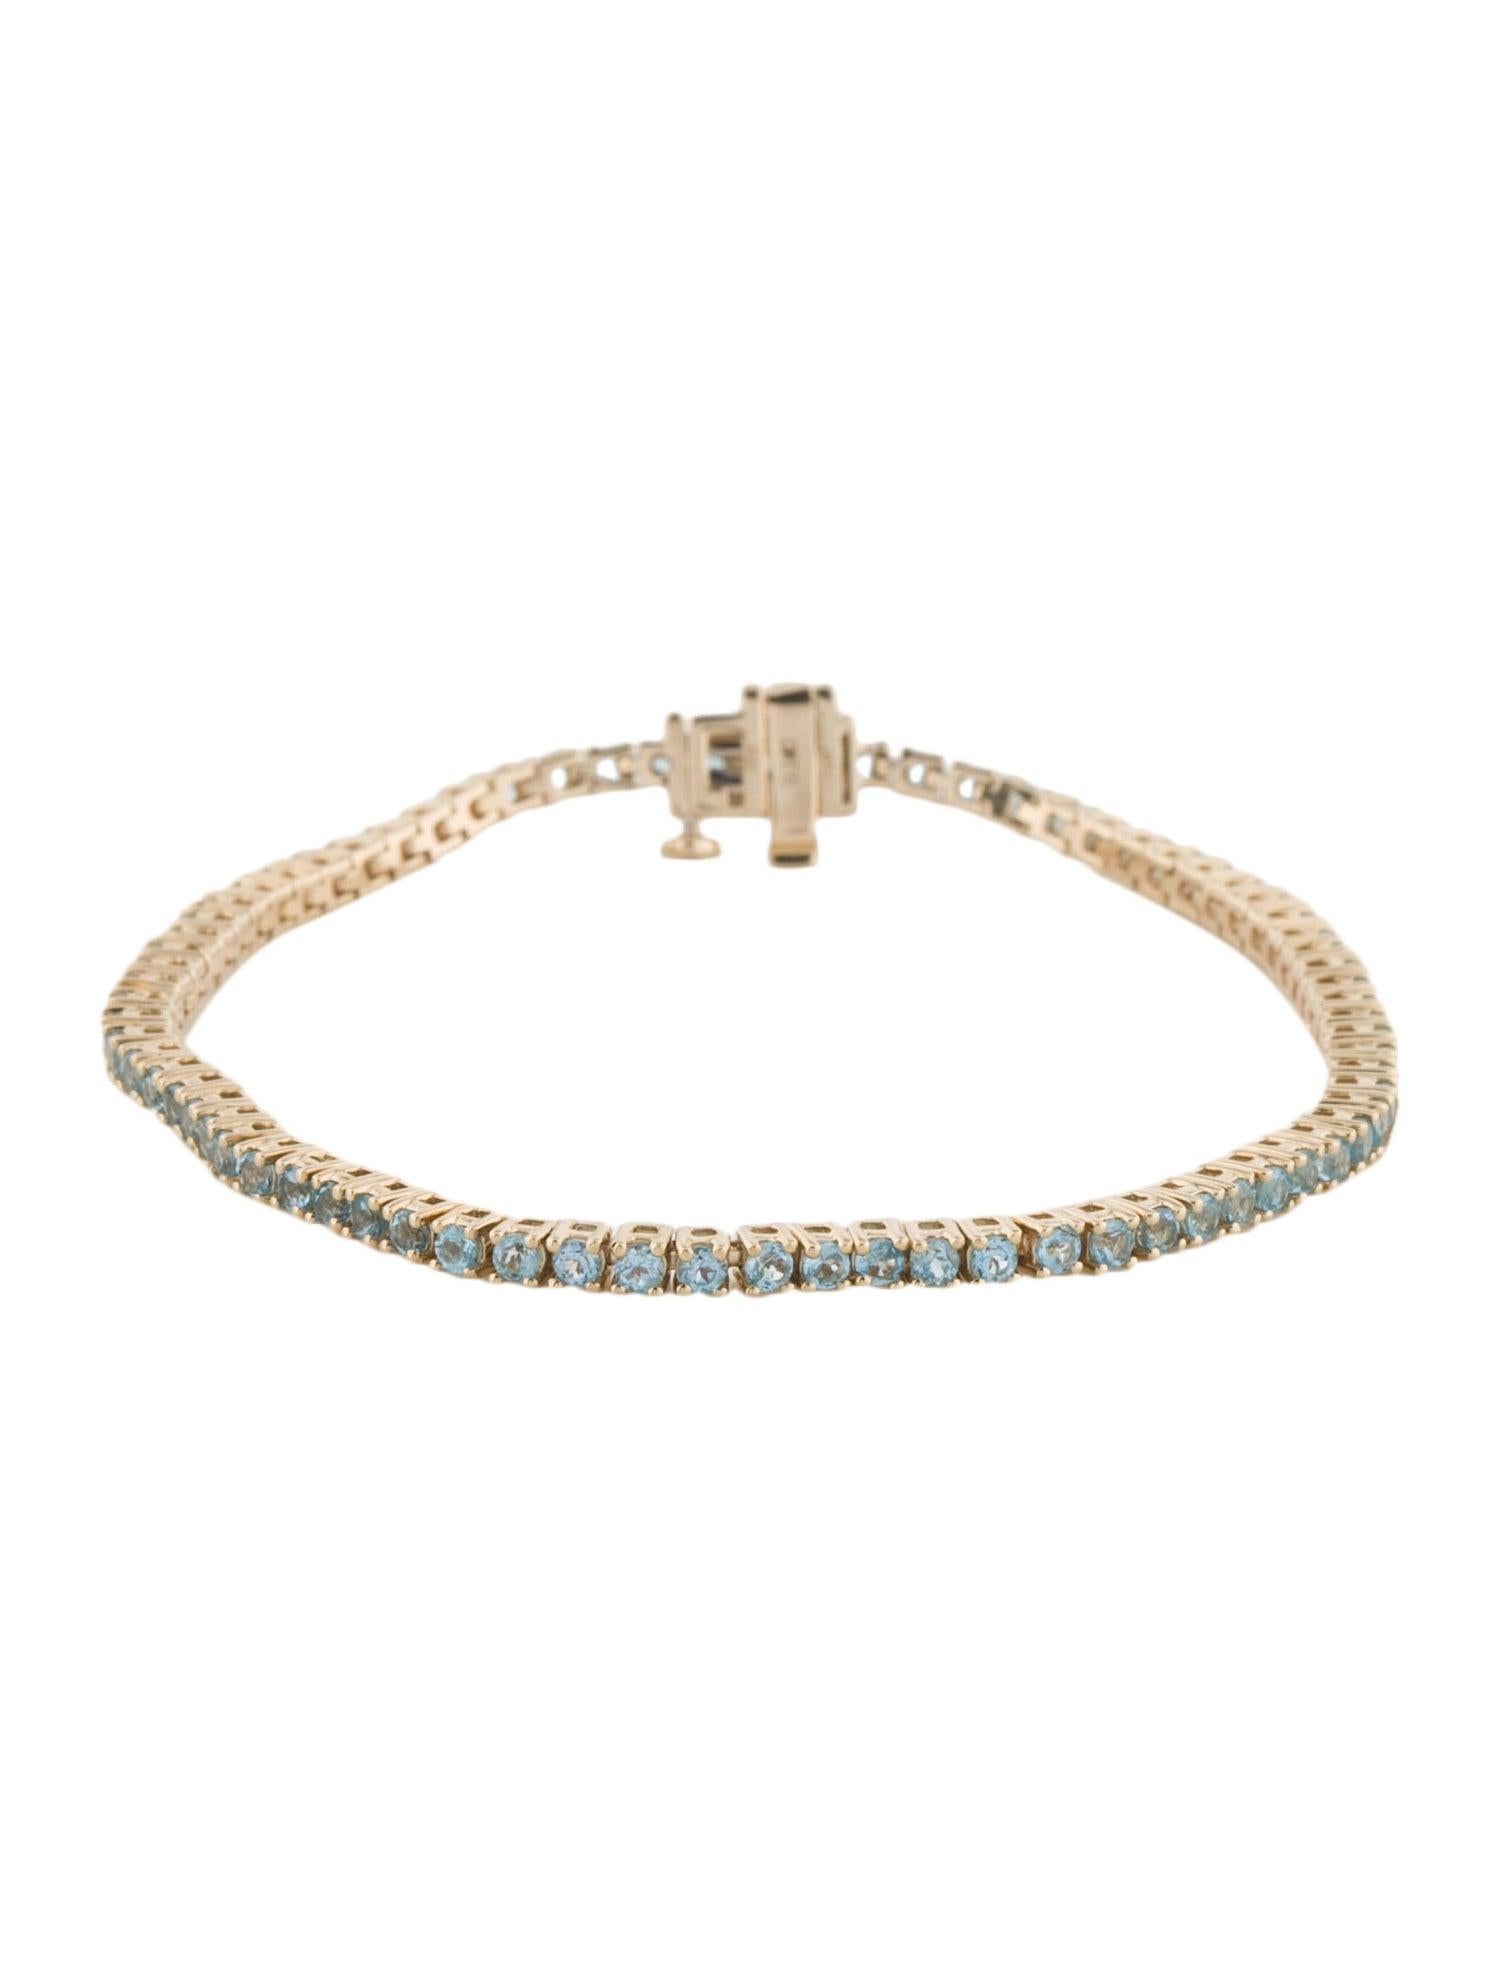 Women's 14K Blue Topaz Link Bracelet - Captivating Gemstone Elegance, Timeless Design For Sale